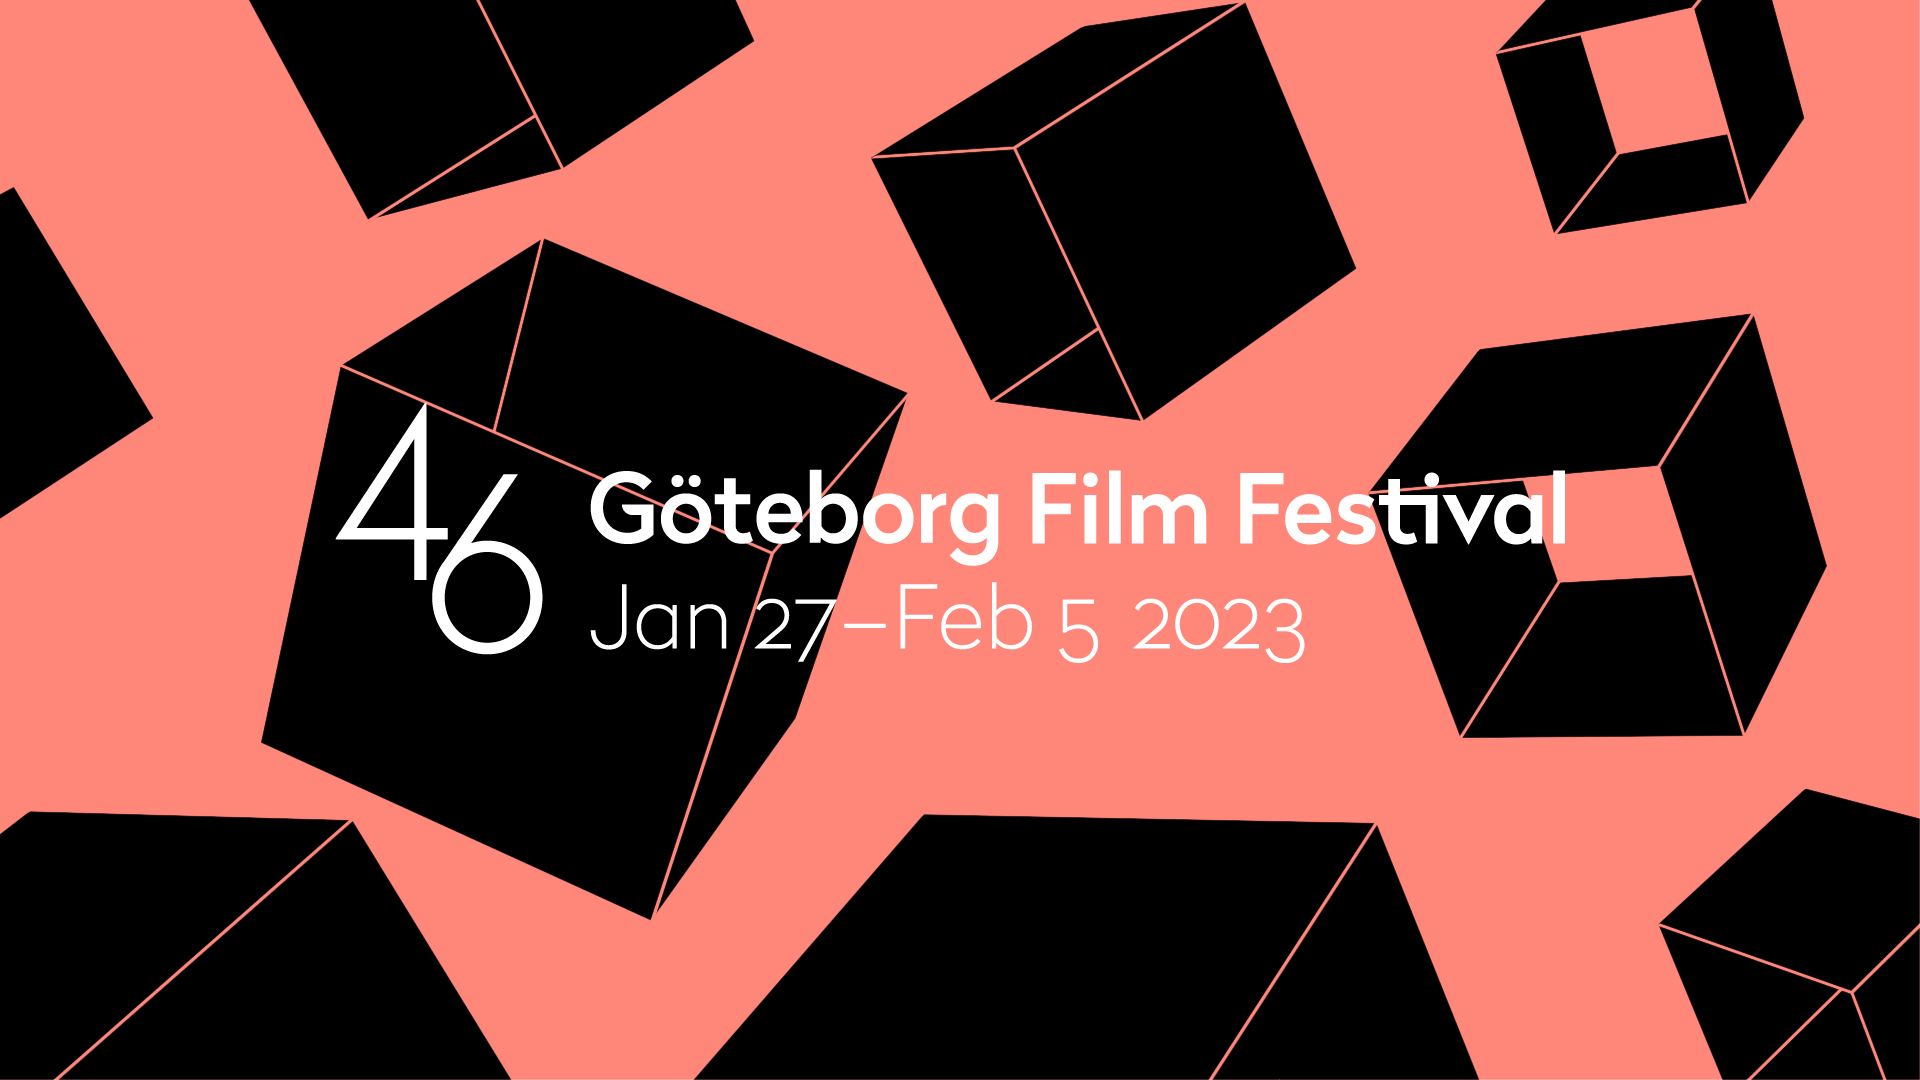 Göteborg Film Festival